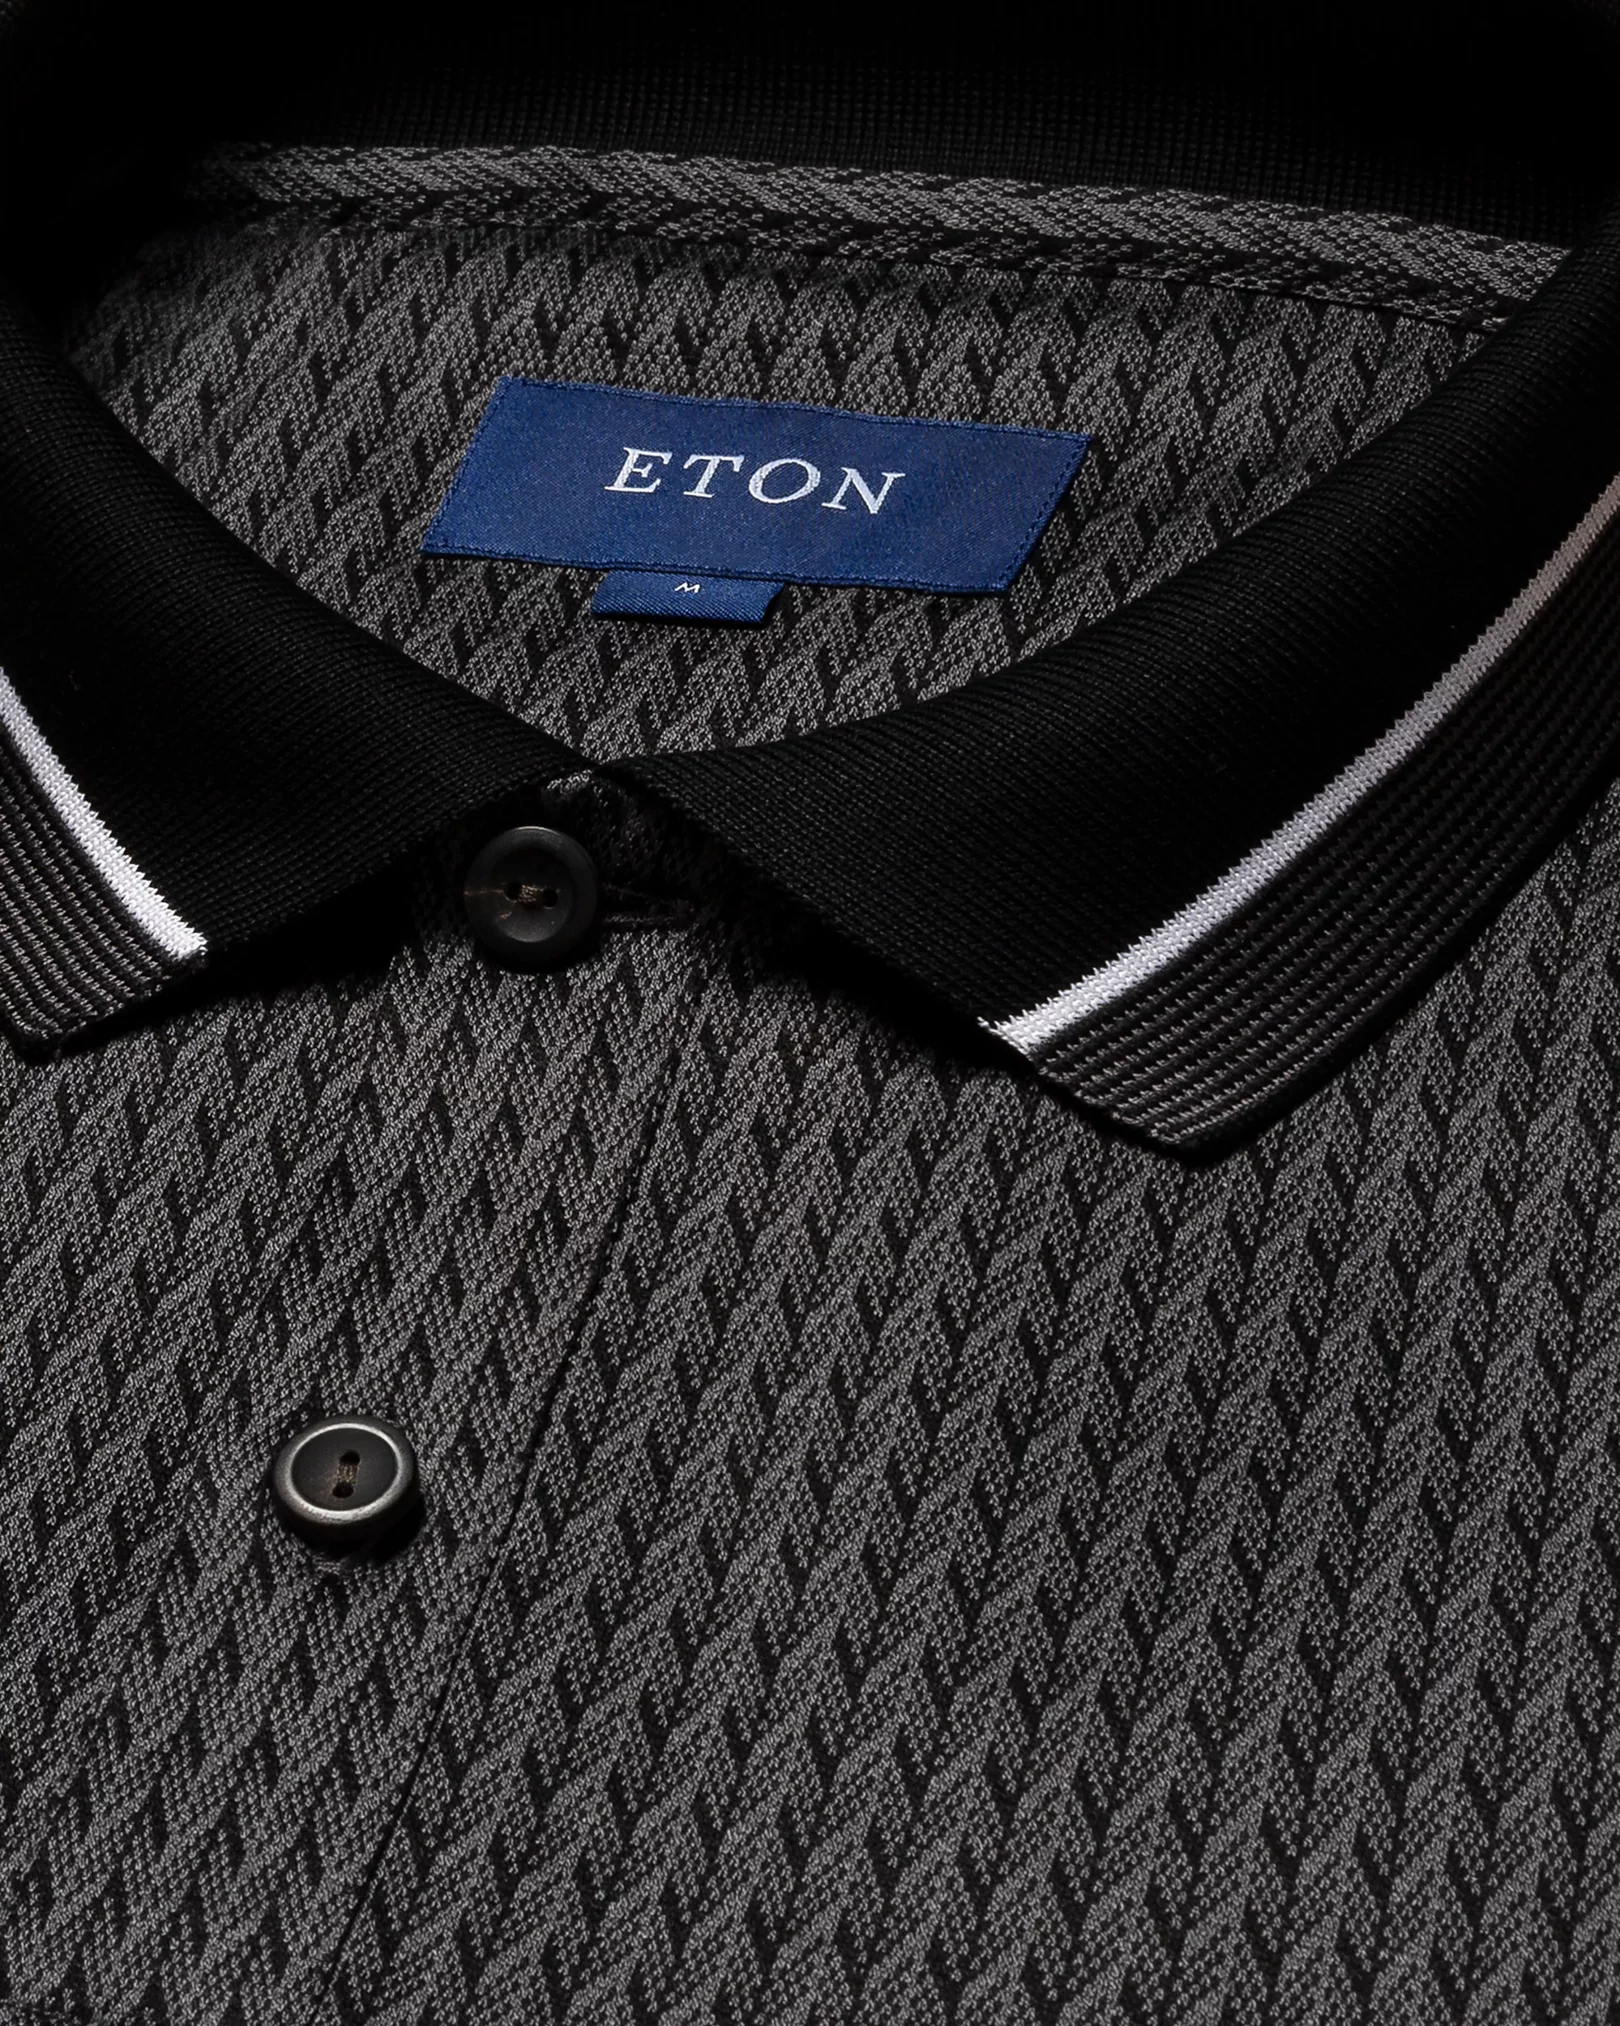 Eton - black jacquard knit